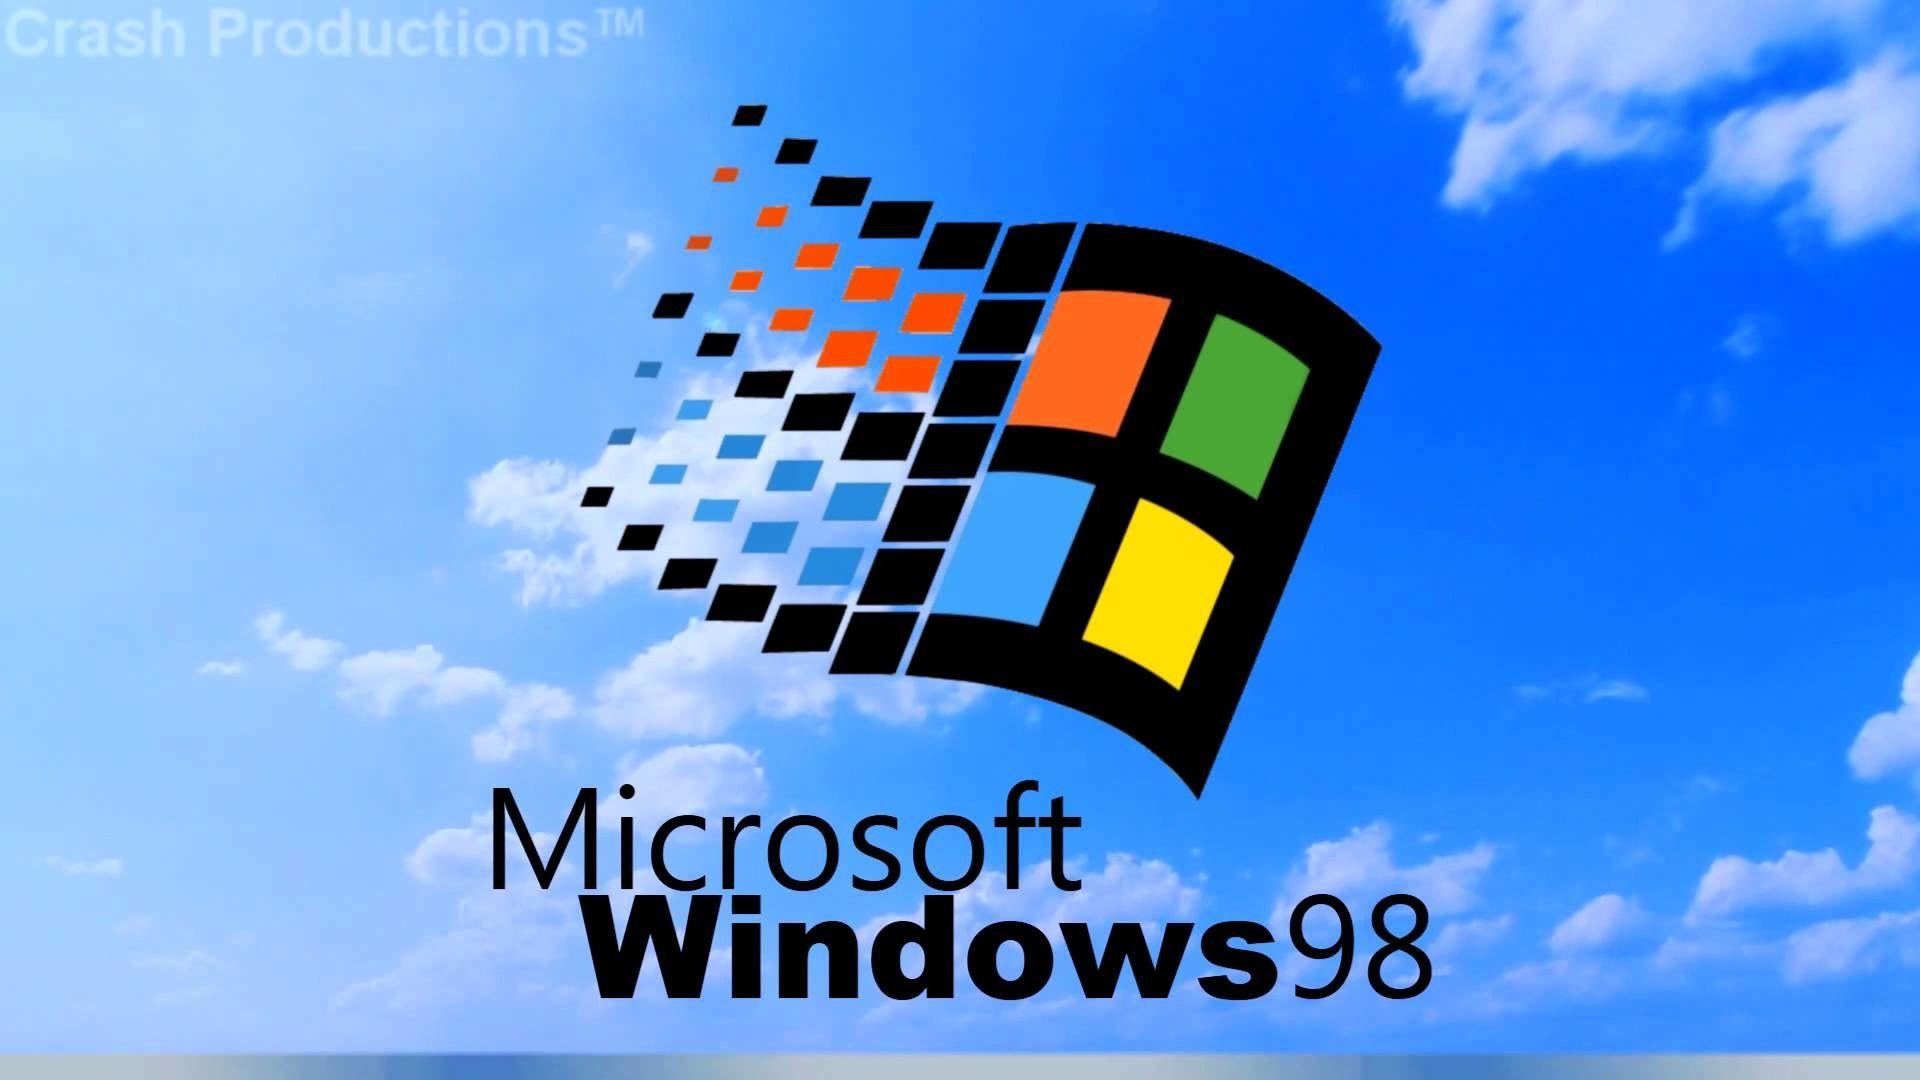 Hình nền Windows 98 HD miễn phí tải về: Hãy tải về những hình nền Windows 98 HD chất lượng cao miễn phí và thỏa sức sáng tạo với desktop của bạn. Bộ sưu tập đa dạng và phong phú chờ đón bạn!